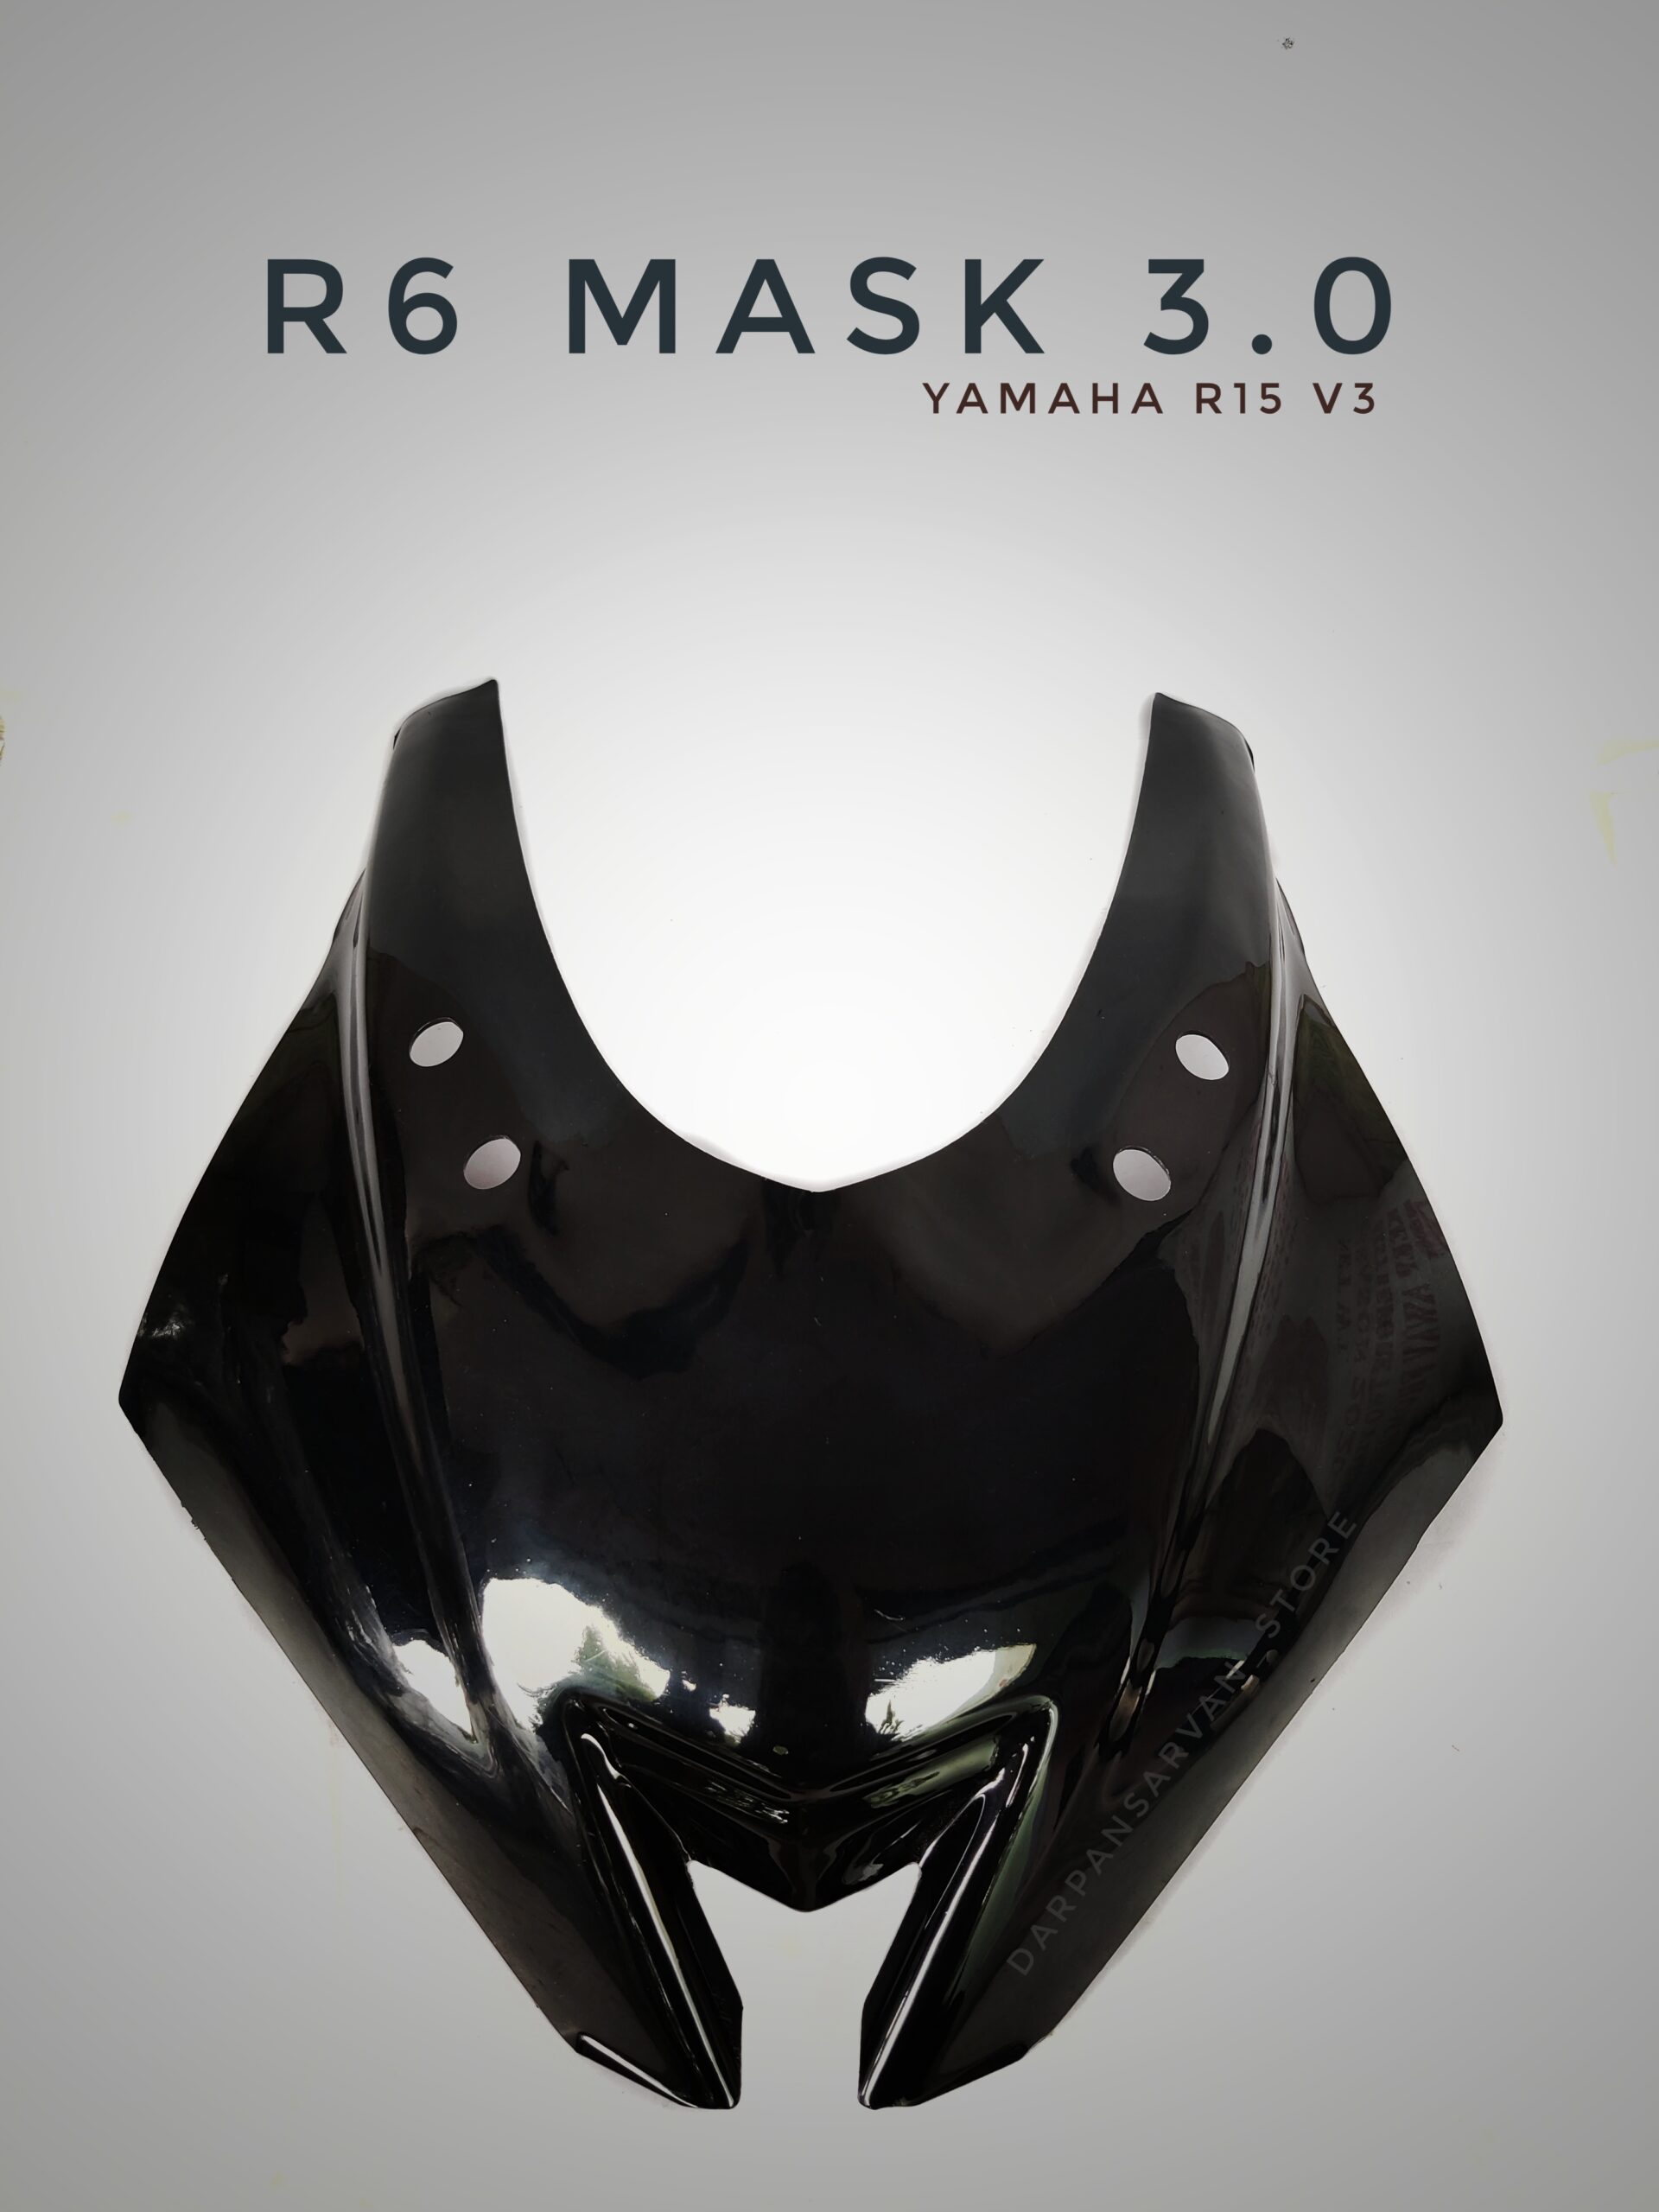 R6 Mask 3.0 For Yamaha R15 V3